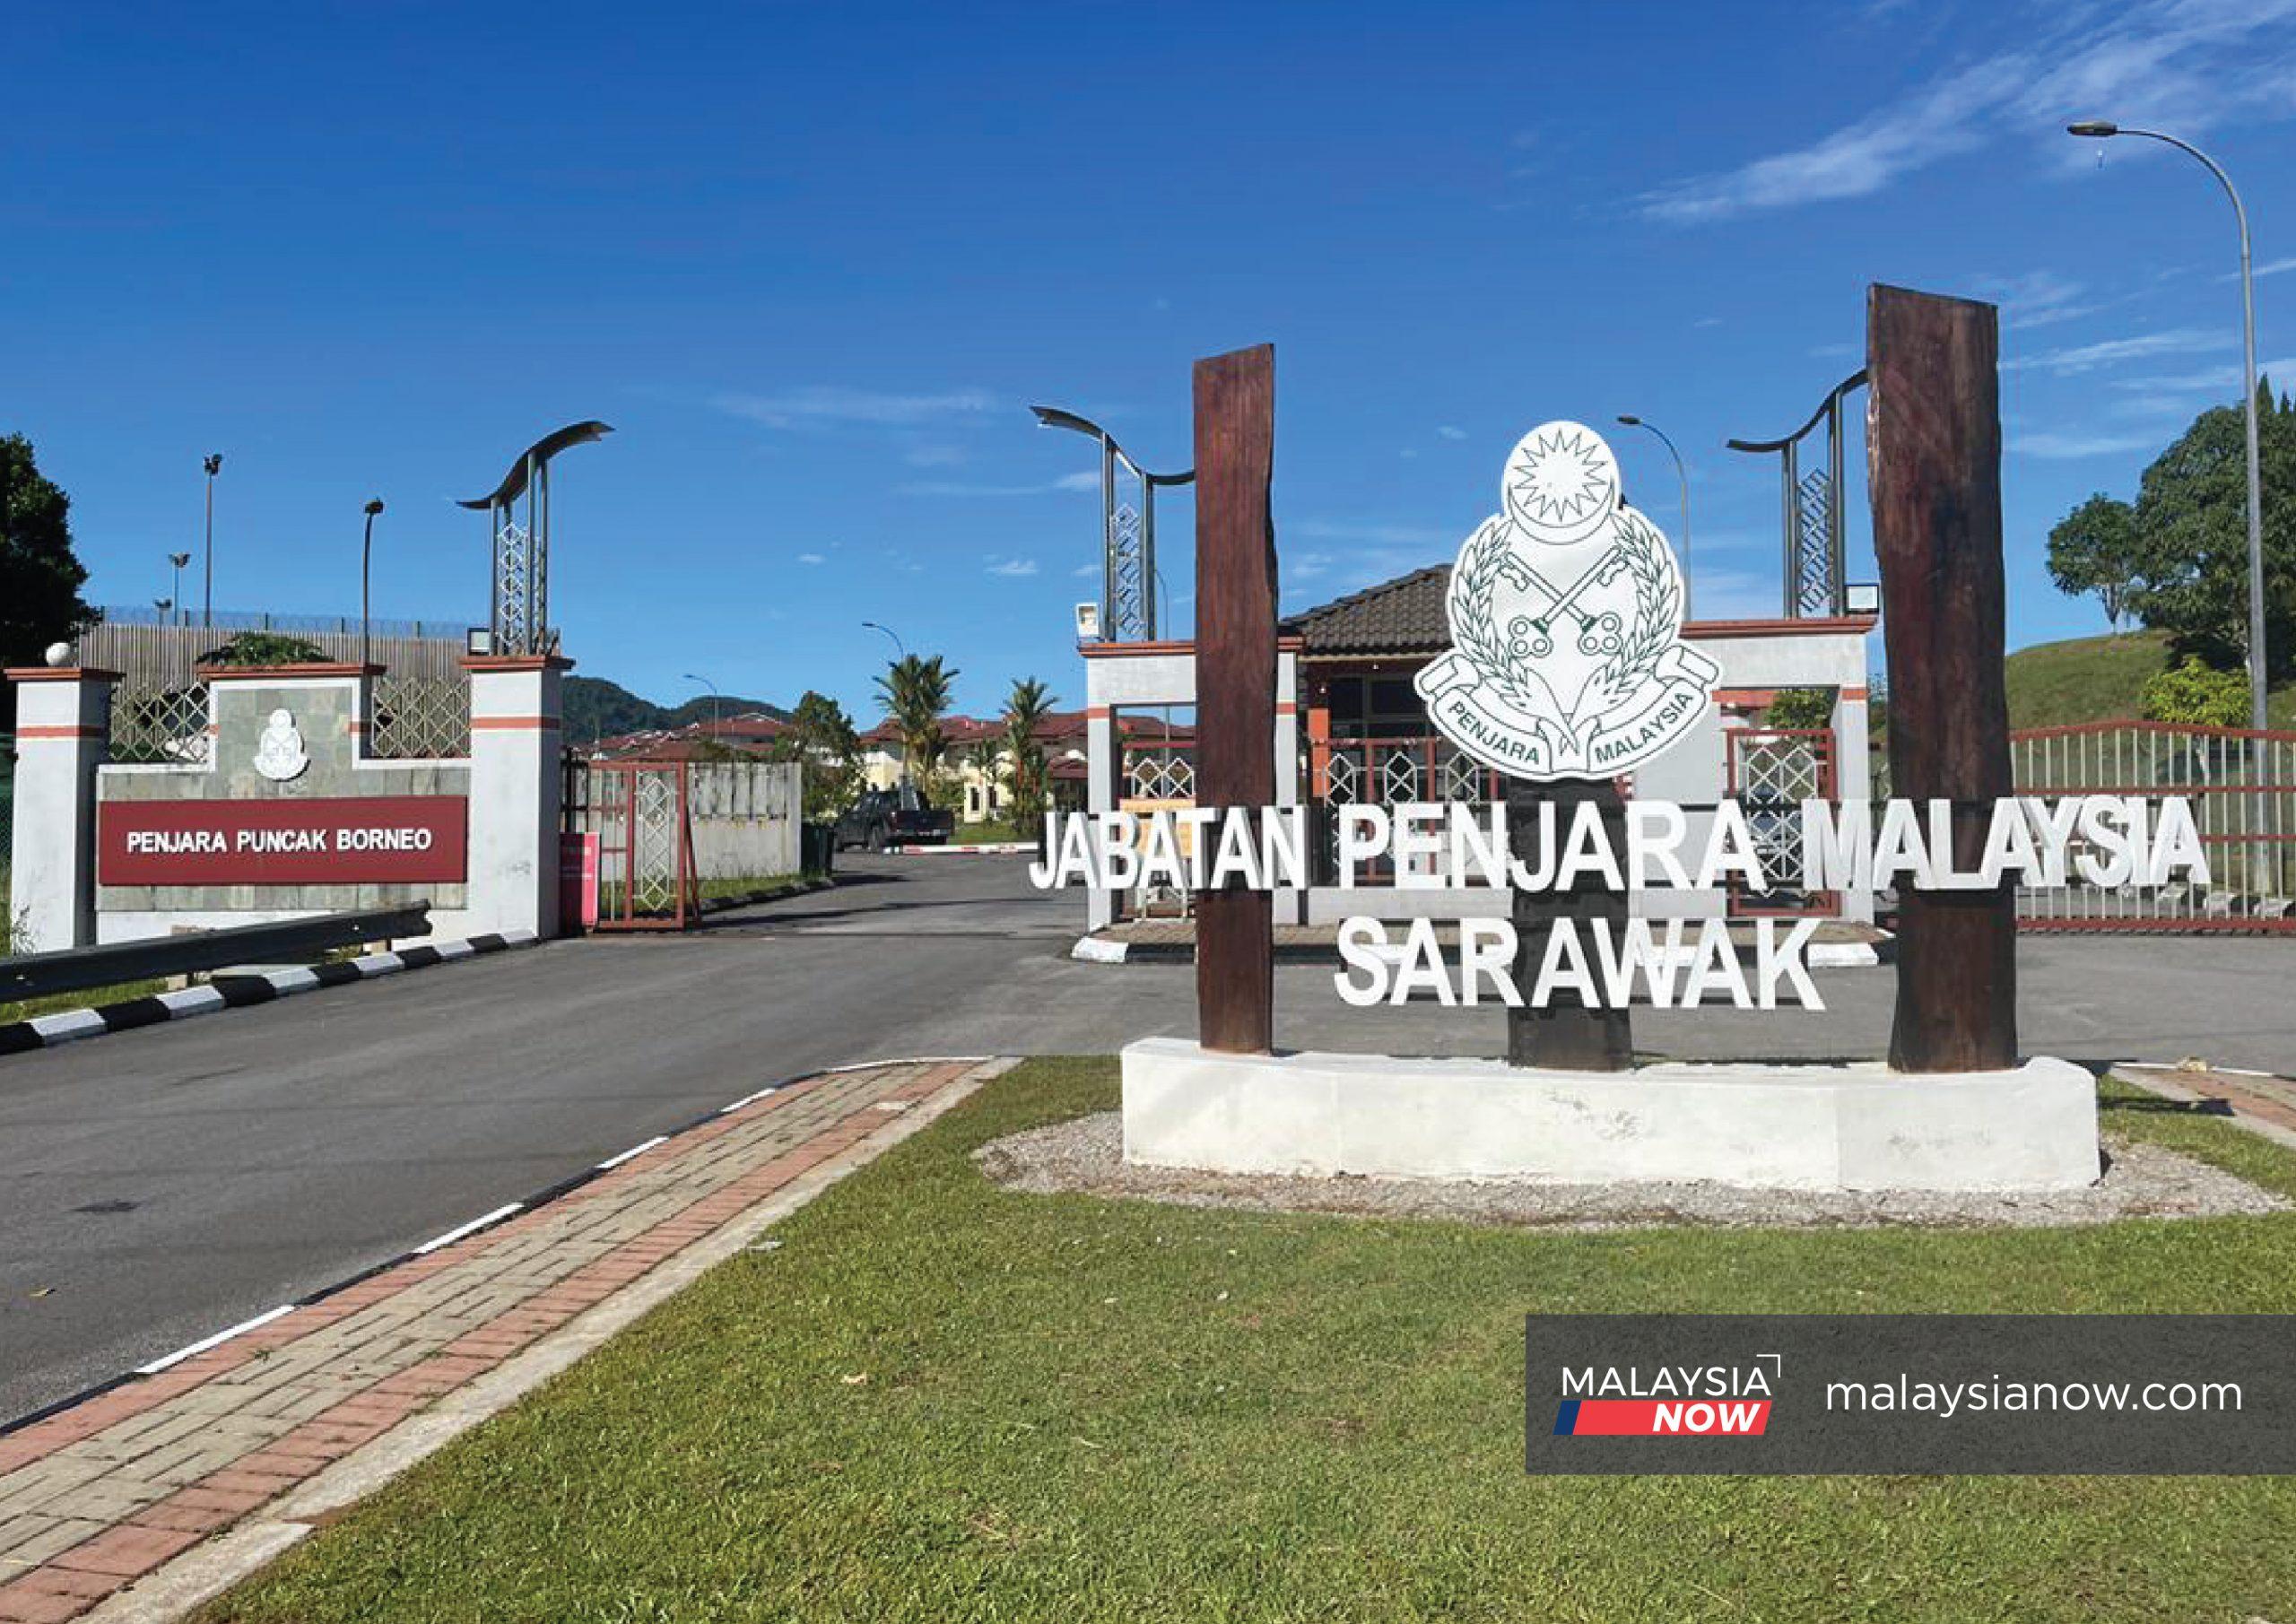 Suntikan vaksin bagi tahanan penjara di Sarawak belum dijalankan. Jabatan penjara masih berbincang mengenainya dengan jabatan kesihatan dan jawatankuasa pengurusan bencana.